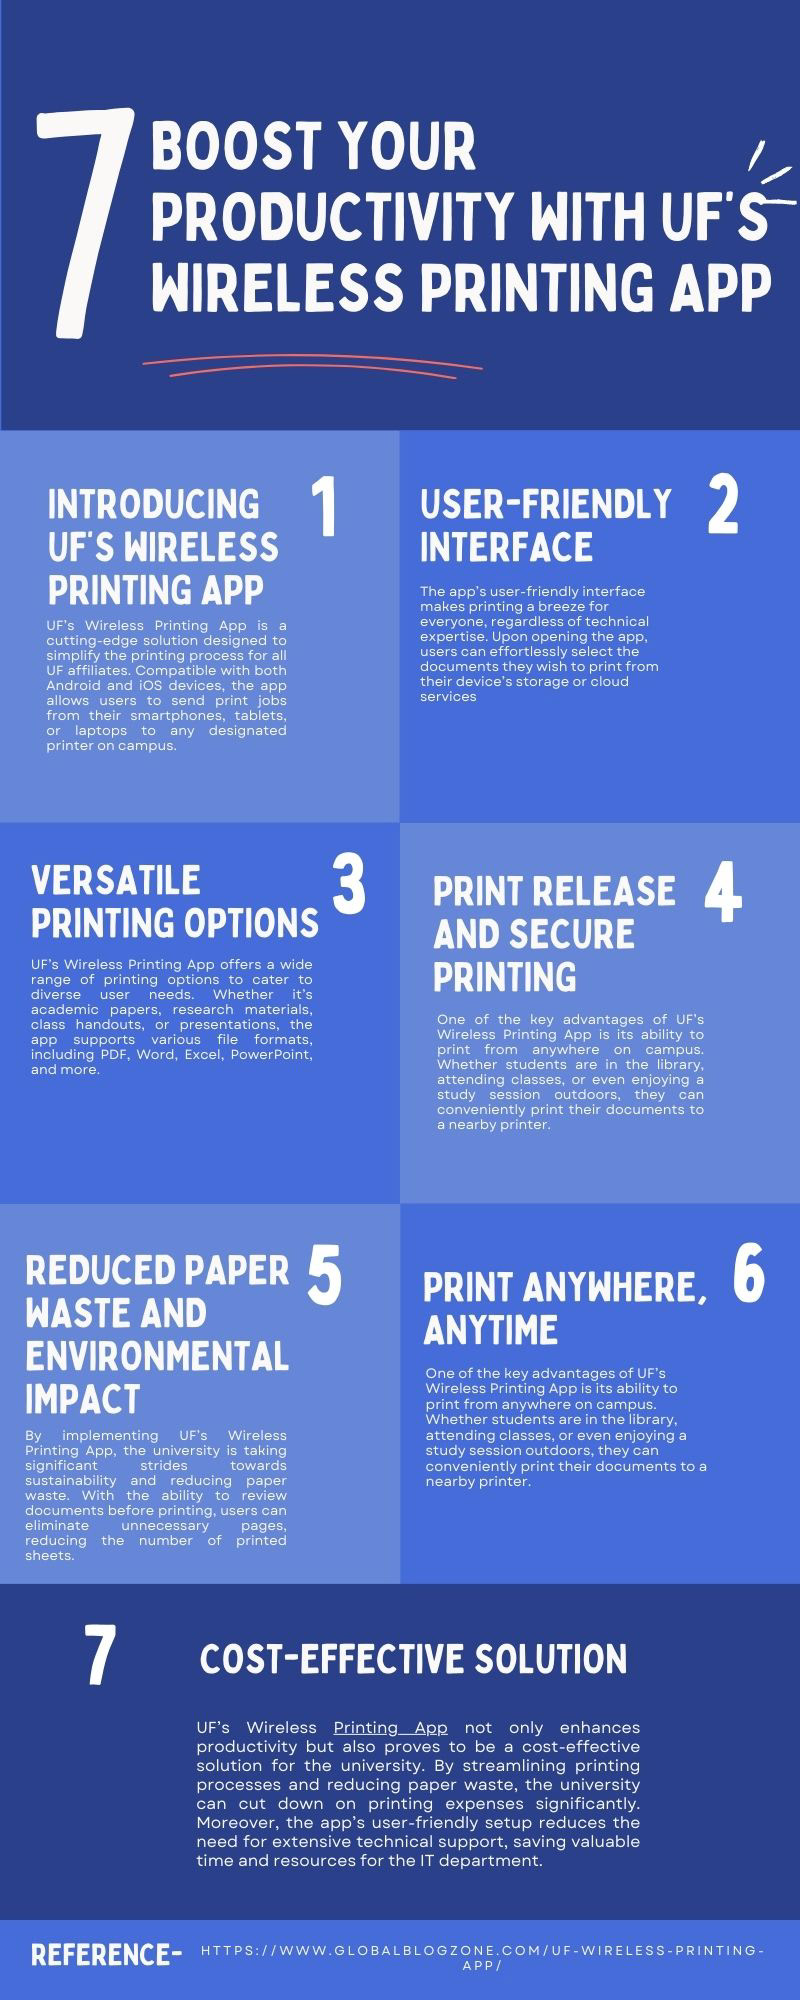 printing design printing press aap